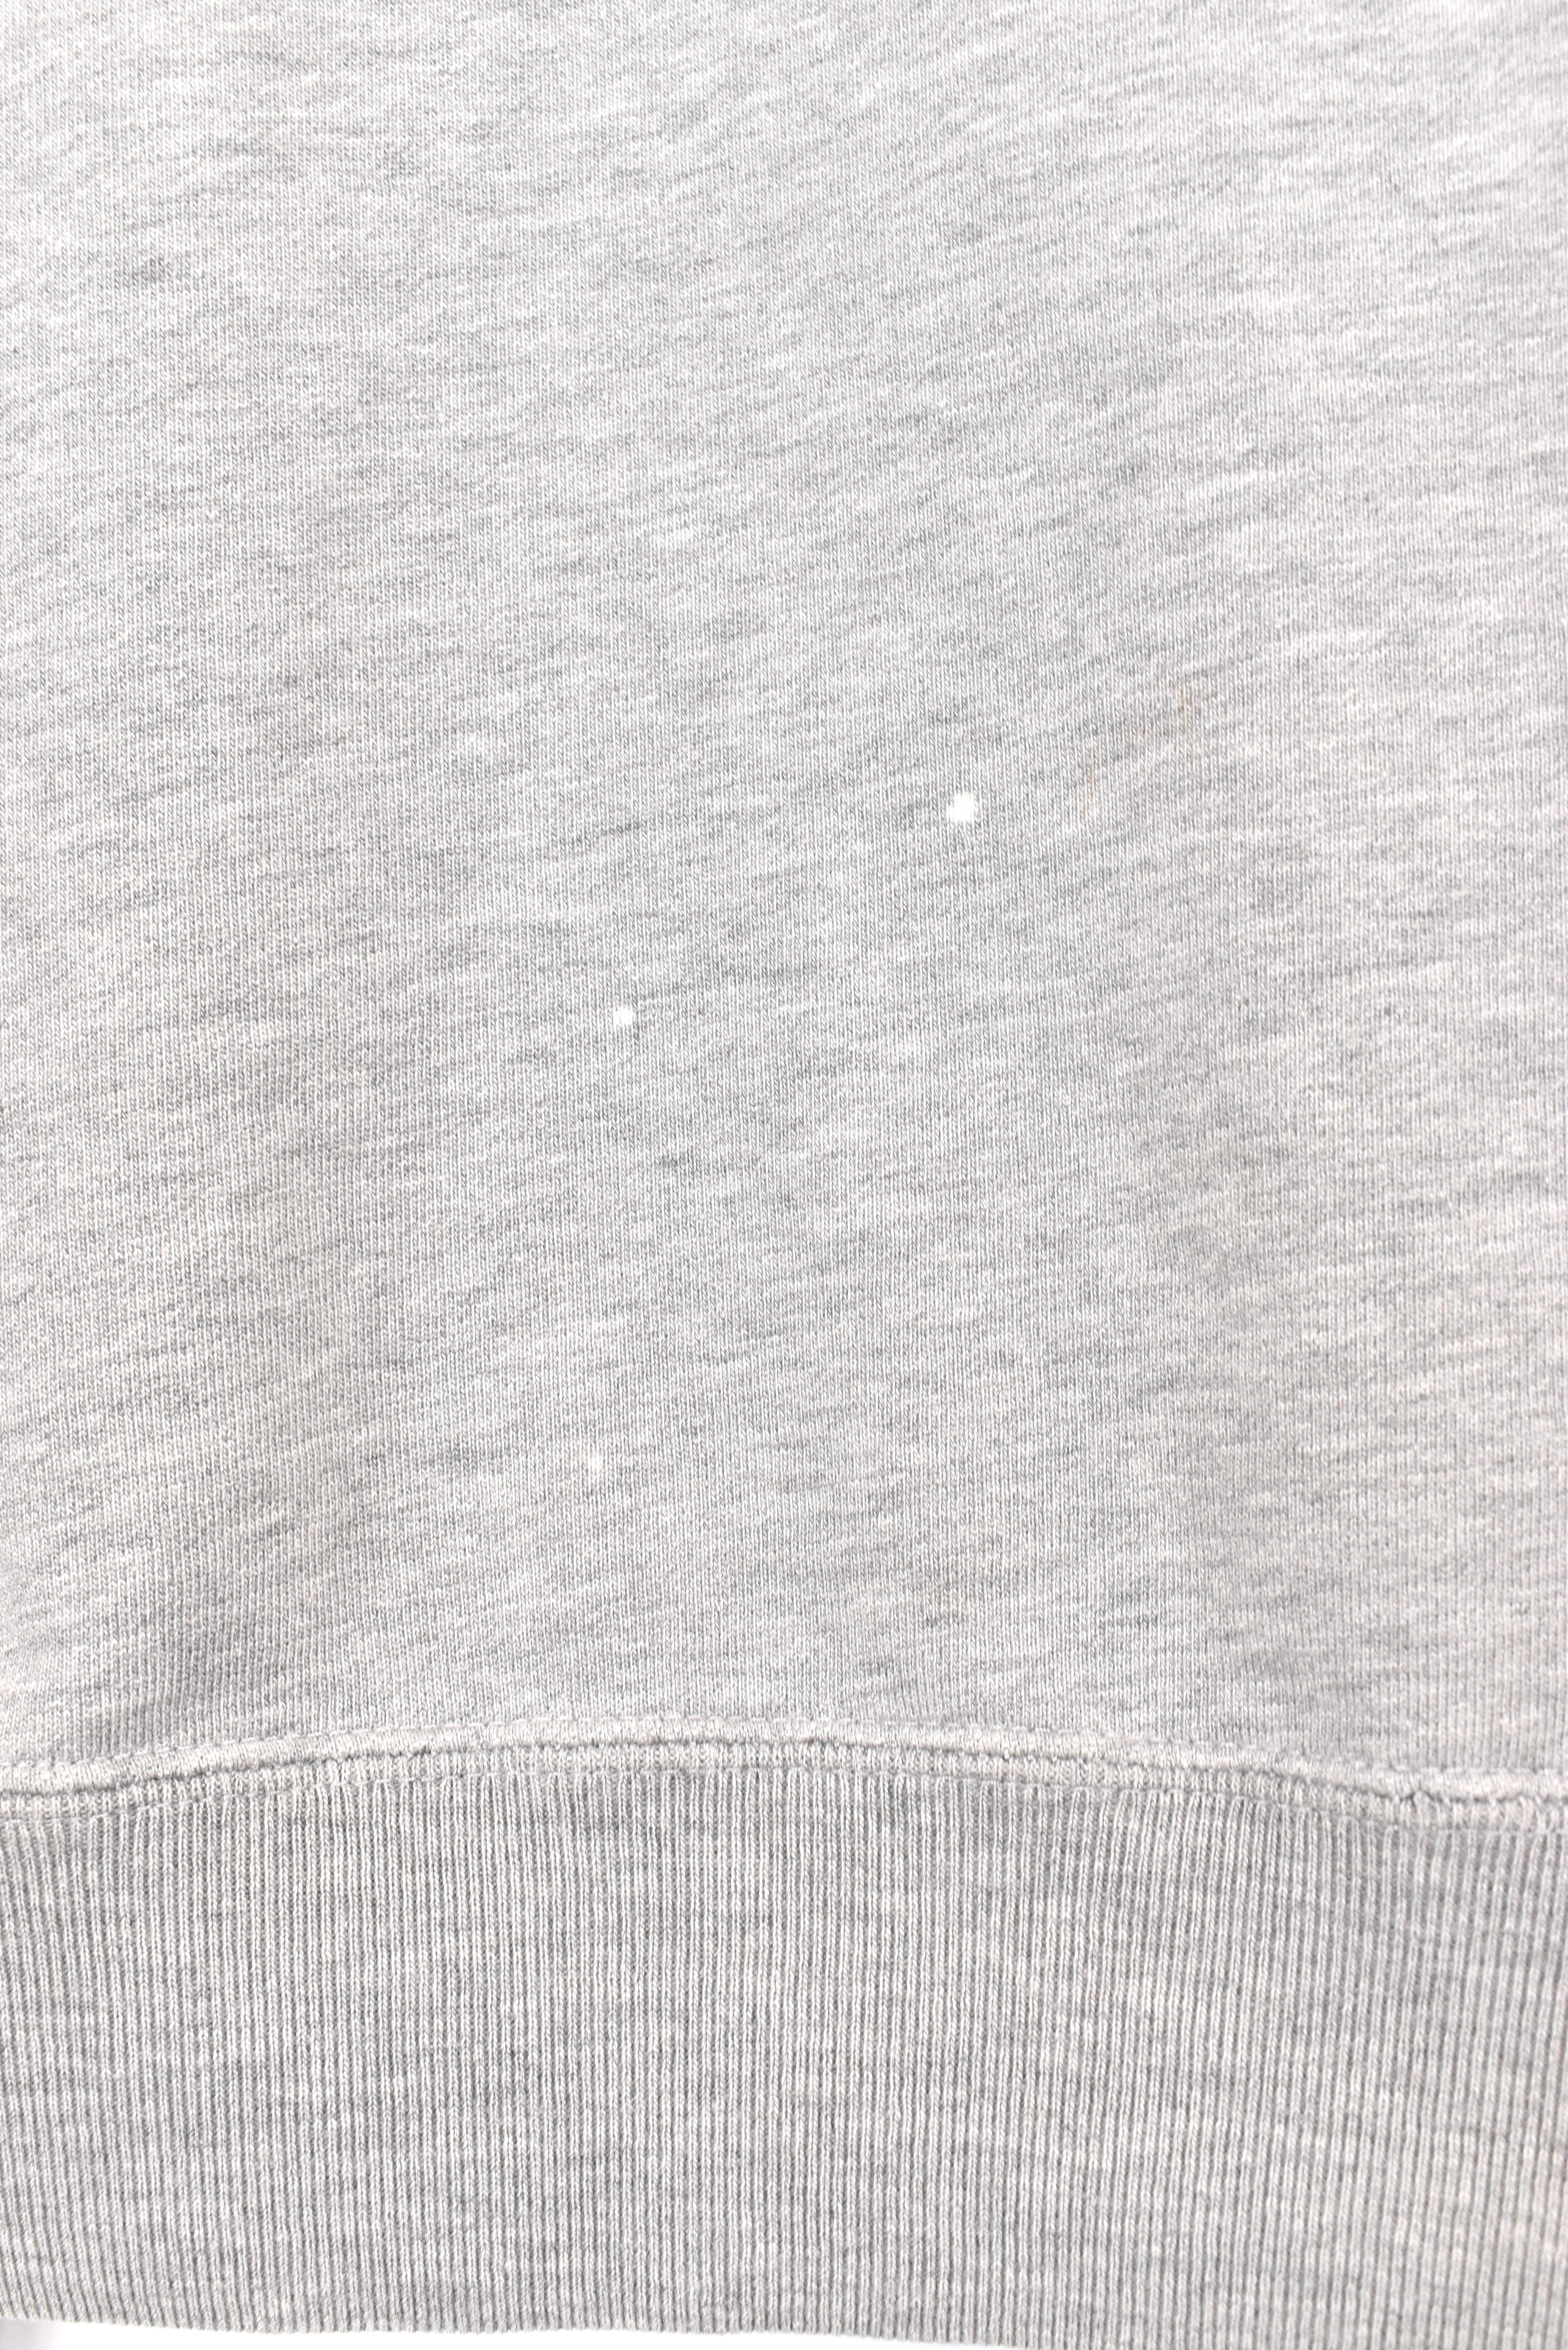 Vintage Ralph Lauren sweatshirt, Polo Sport grey embroidered 1/4 zip - AU L RALPH LAUREN